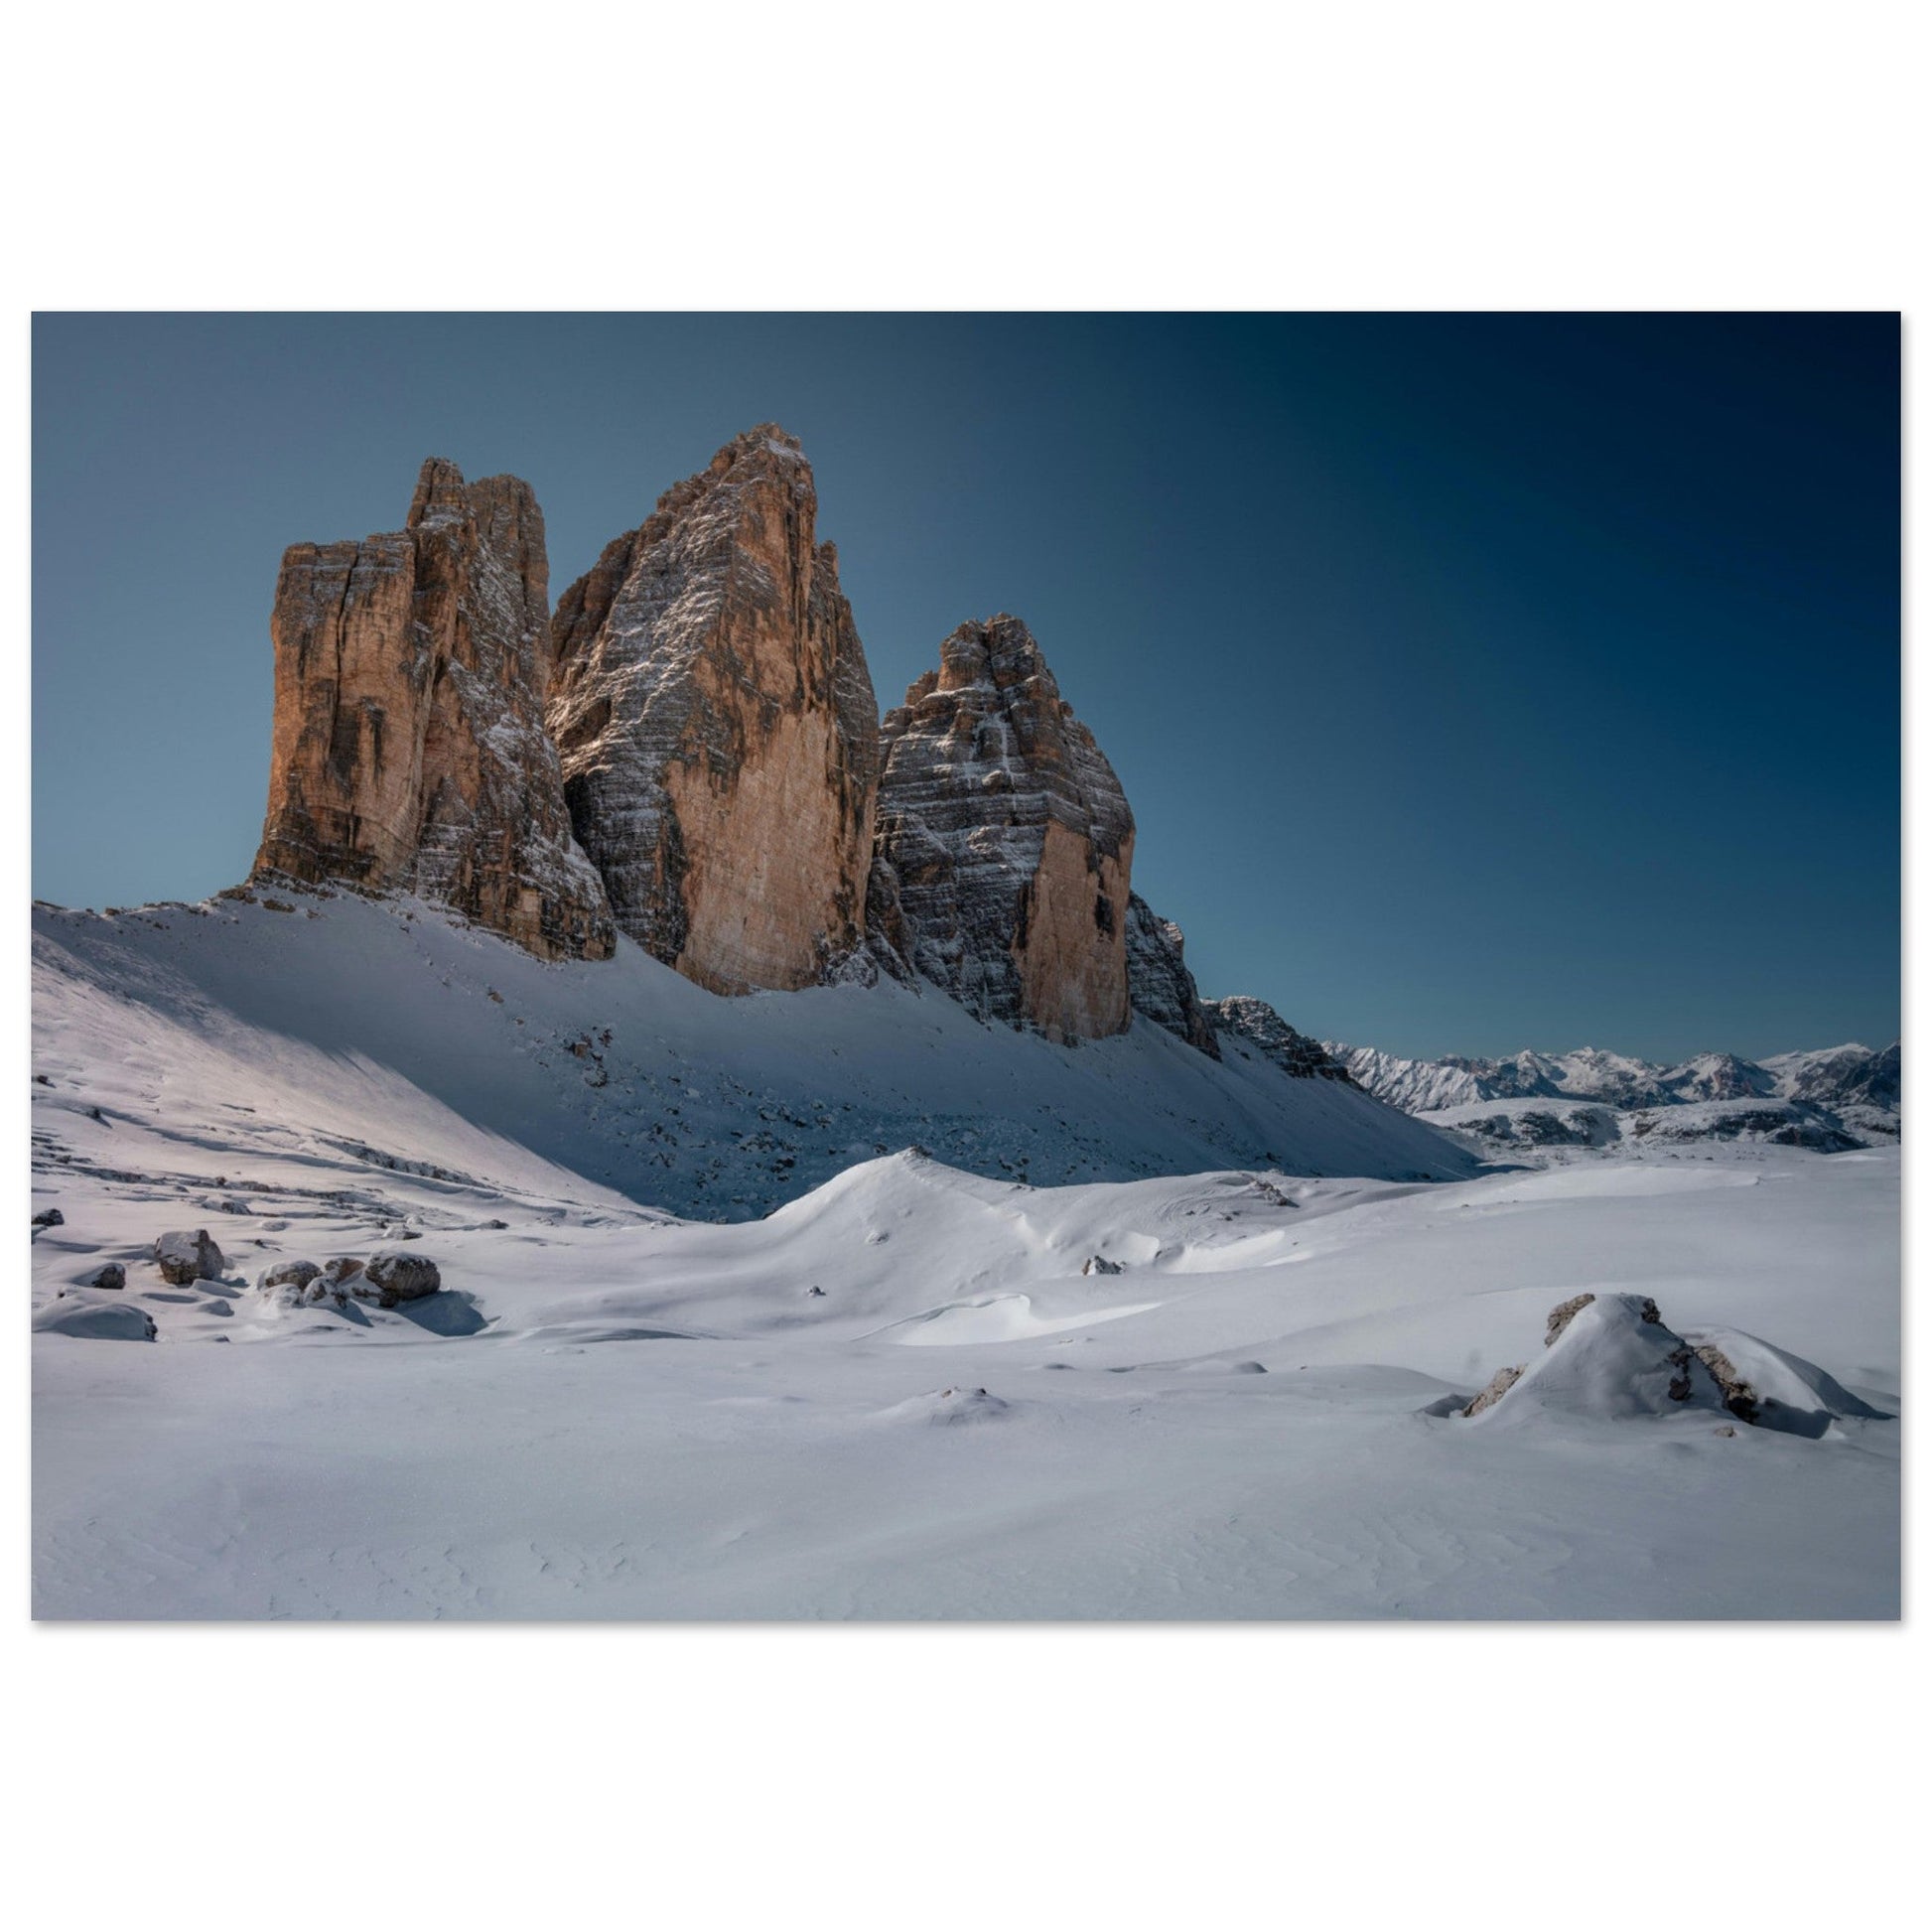 Vente Photo de neige au pied des Tre Cime di Lavaredo, Italie - Tableau photo paysage